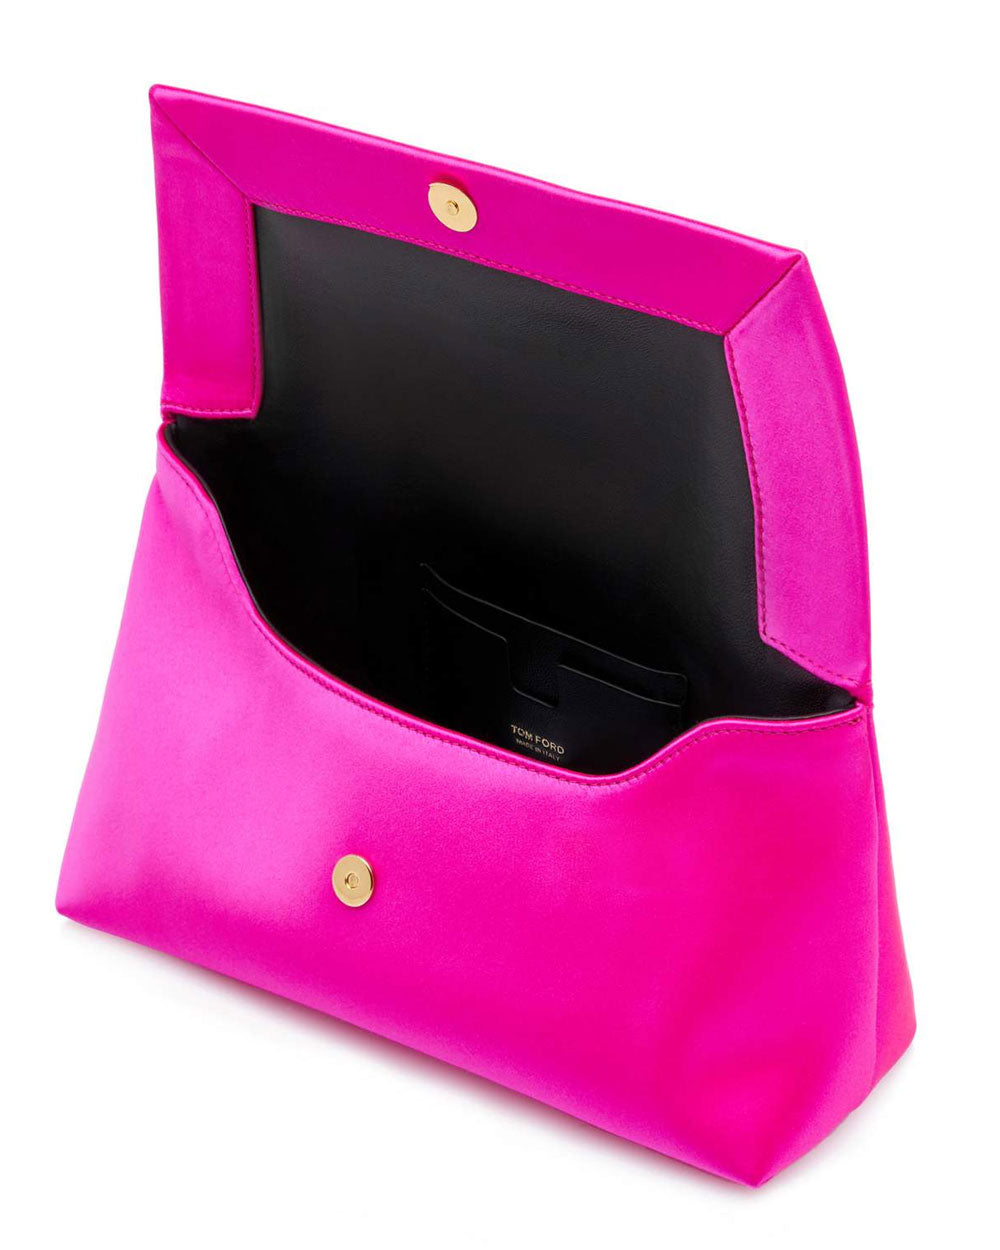 Tom Ford Mini Satin Shoulder Bag in Hot Pink – Stanley Korshak